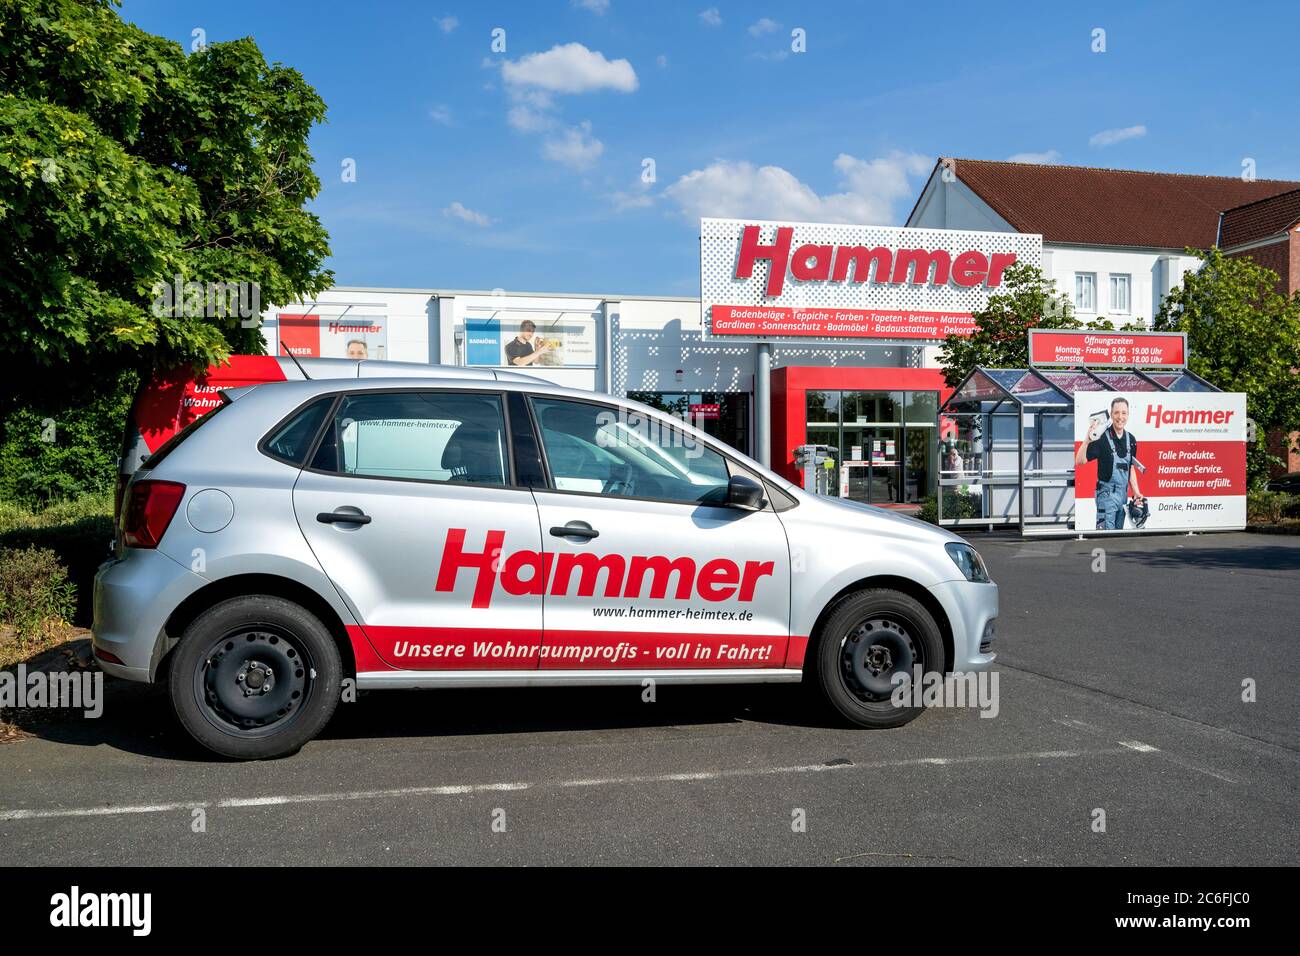 Hammer car immagini e fotografie stock ad alta risoluzione - Alamy